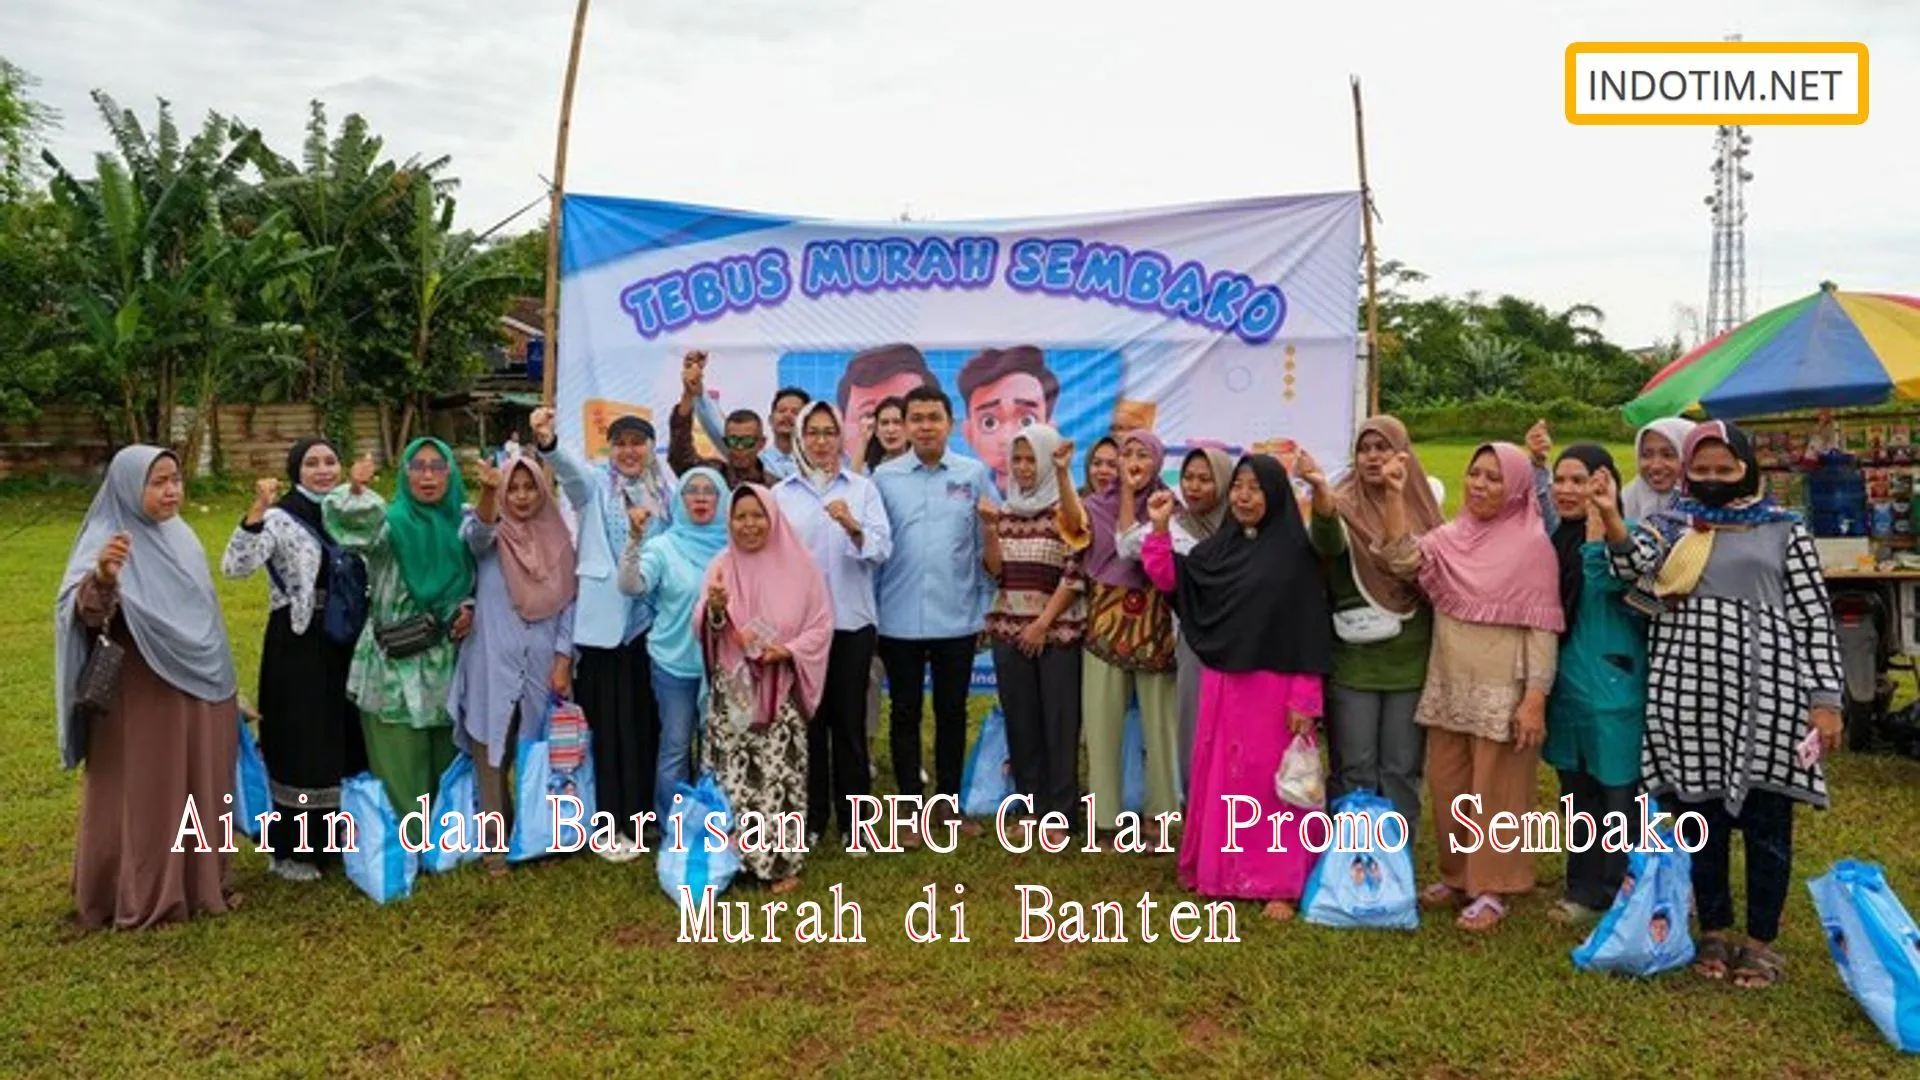 Airin dan Barisan RFG Gelar Promo Sembako Murah di Banten